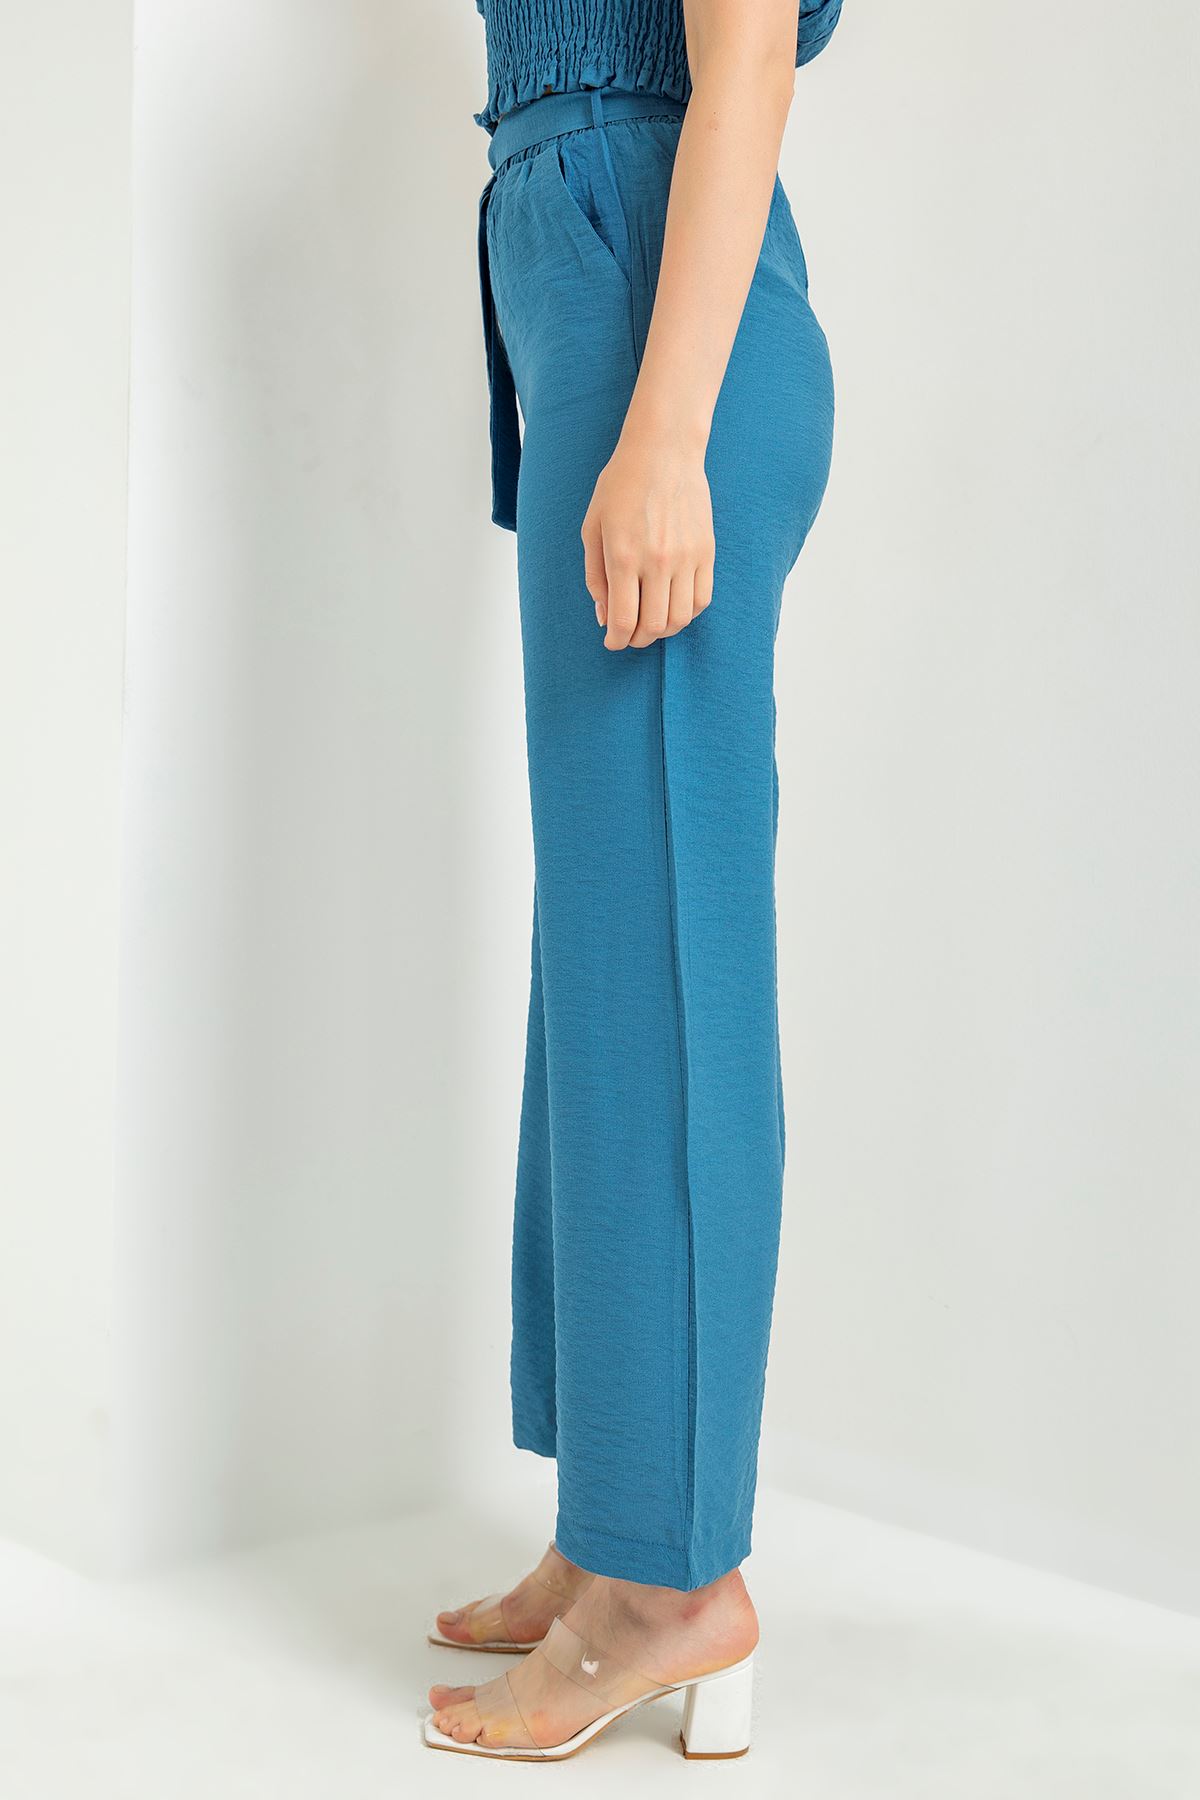 Linen Fabric Long Wide Belted Women'S Trouser - Navy Blue 